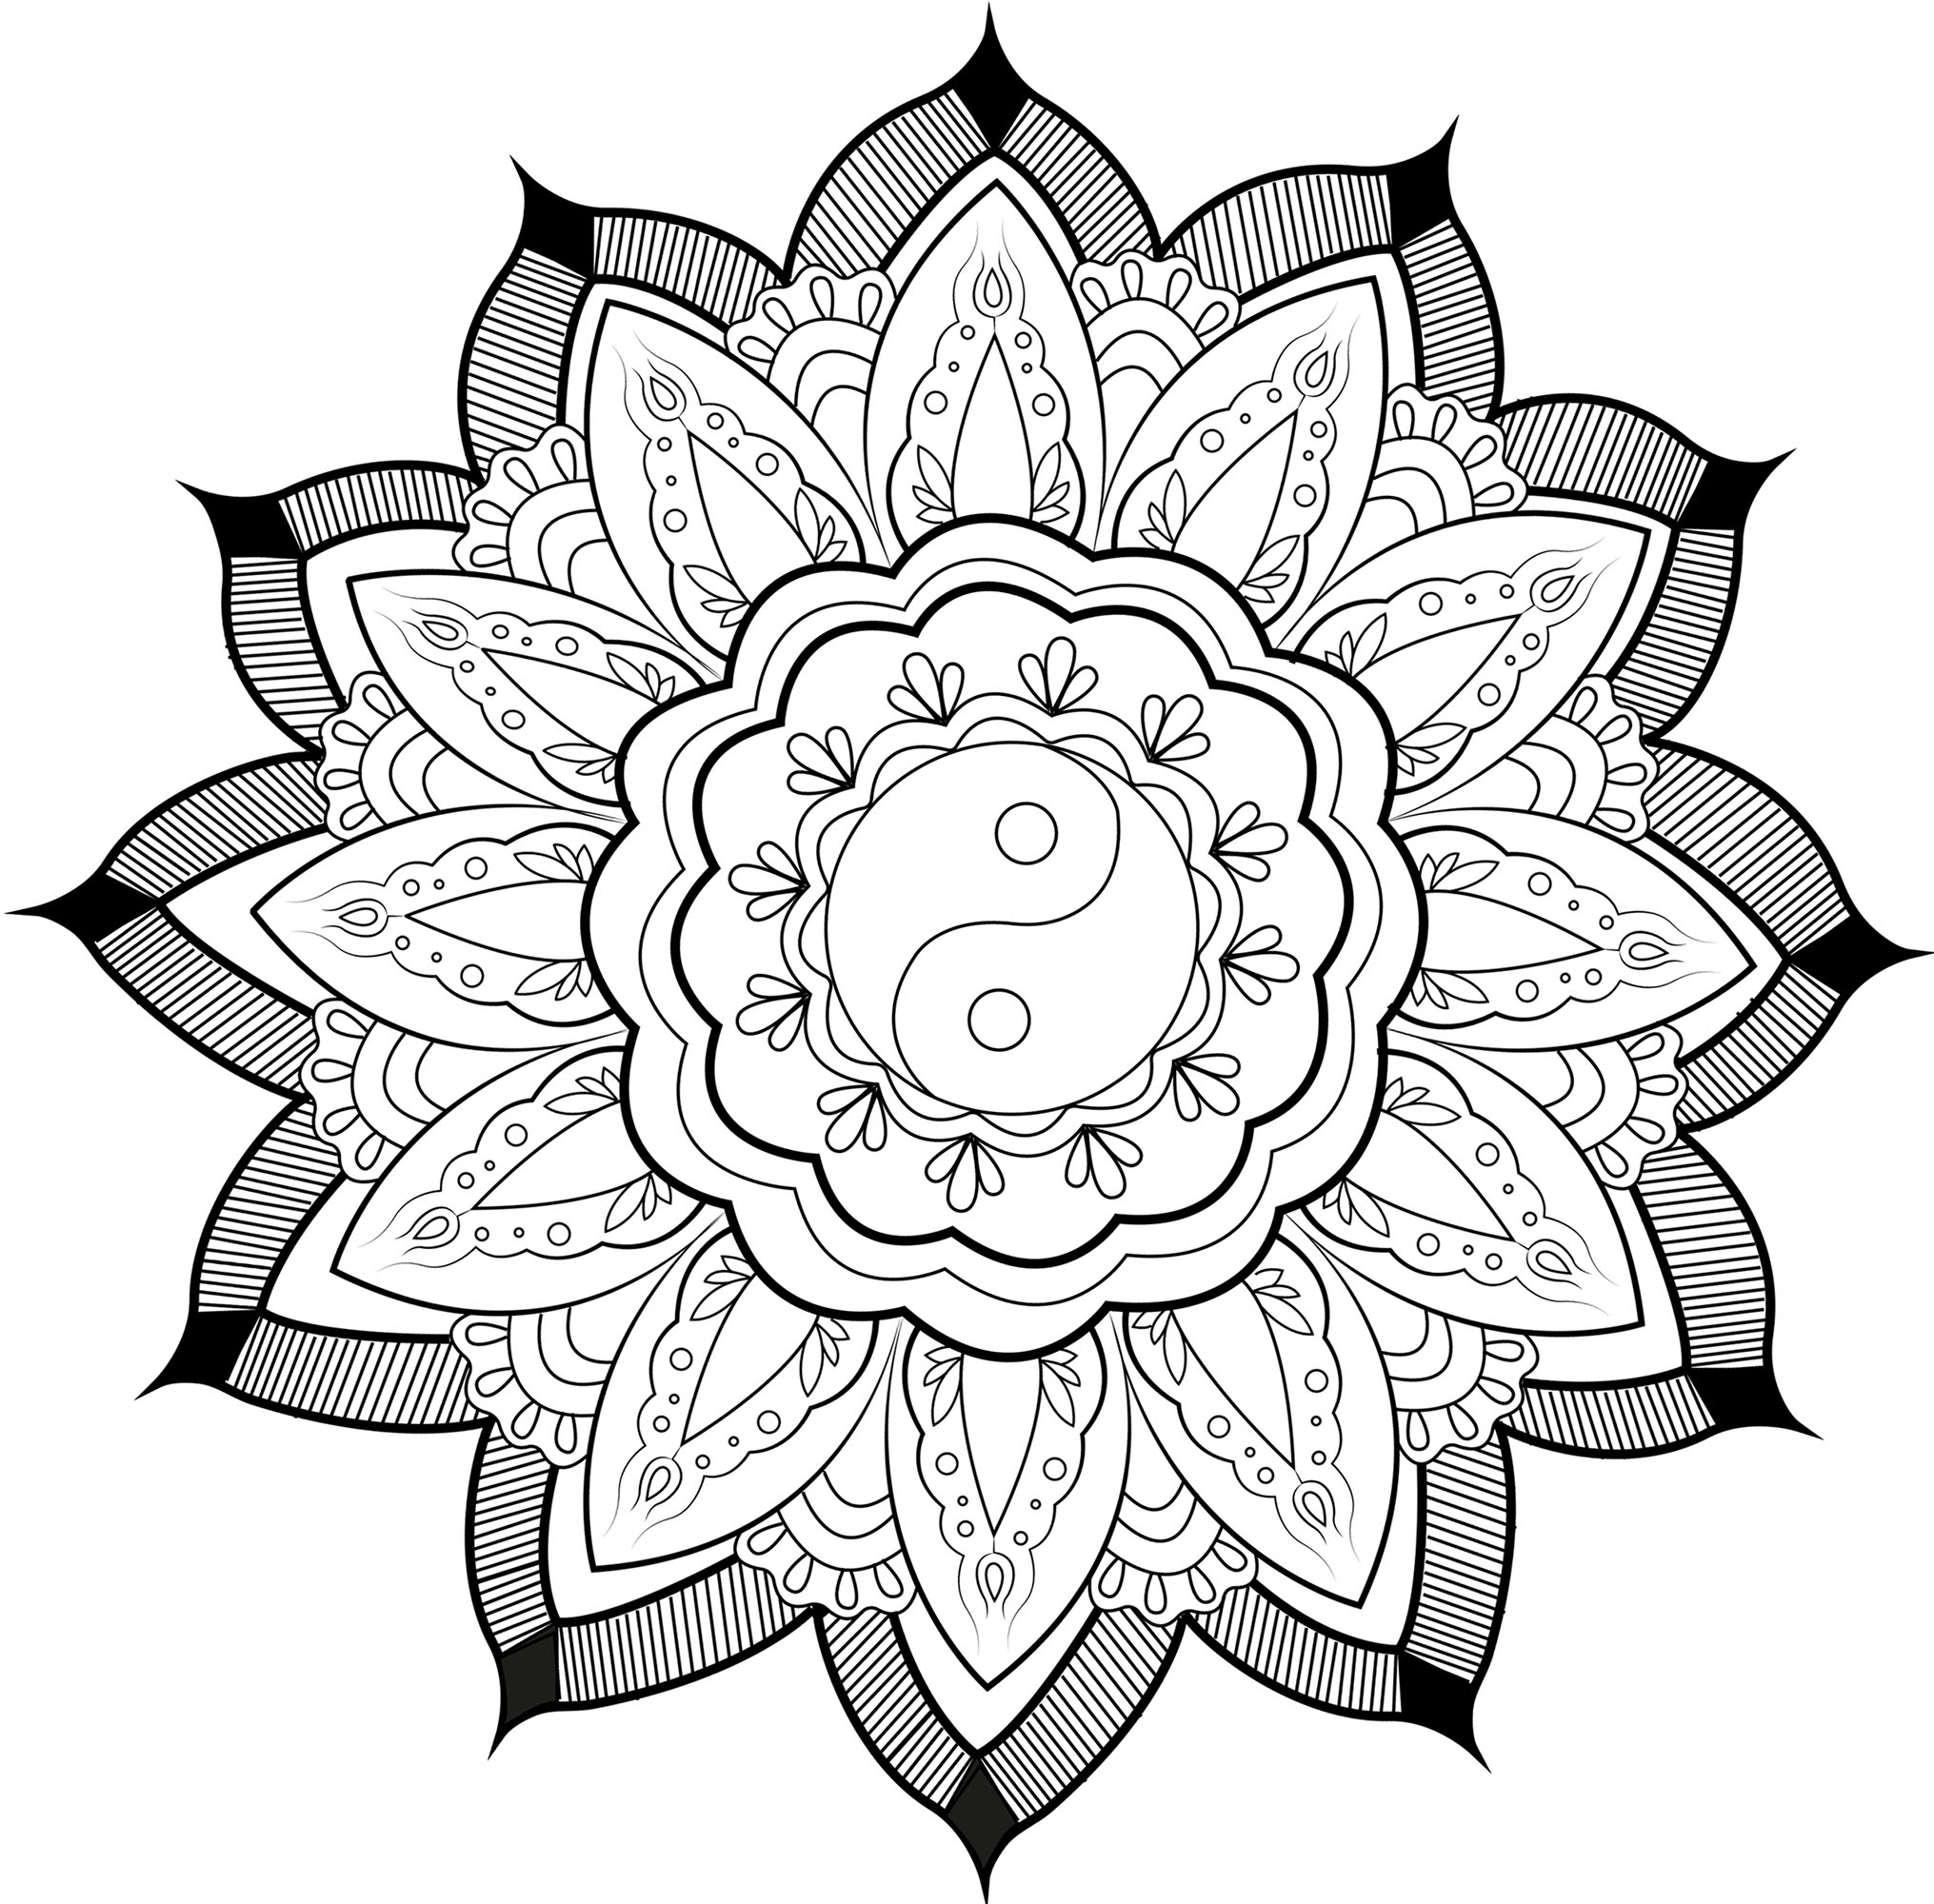 Bonito mandala con un símbolo del Yin y el Yang en el centro y bonitas hojas rodeándolo